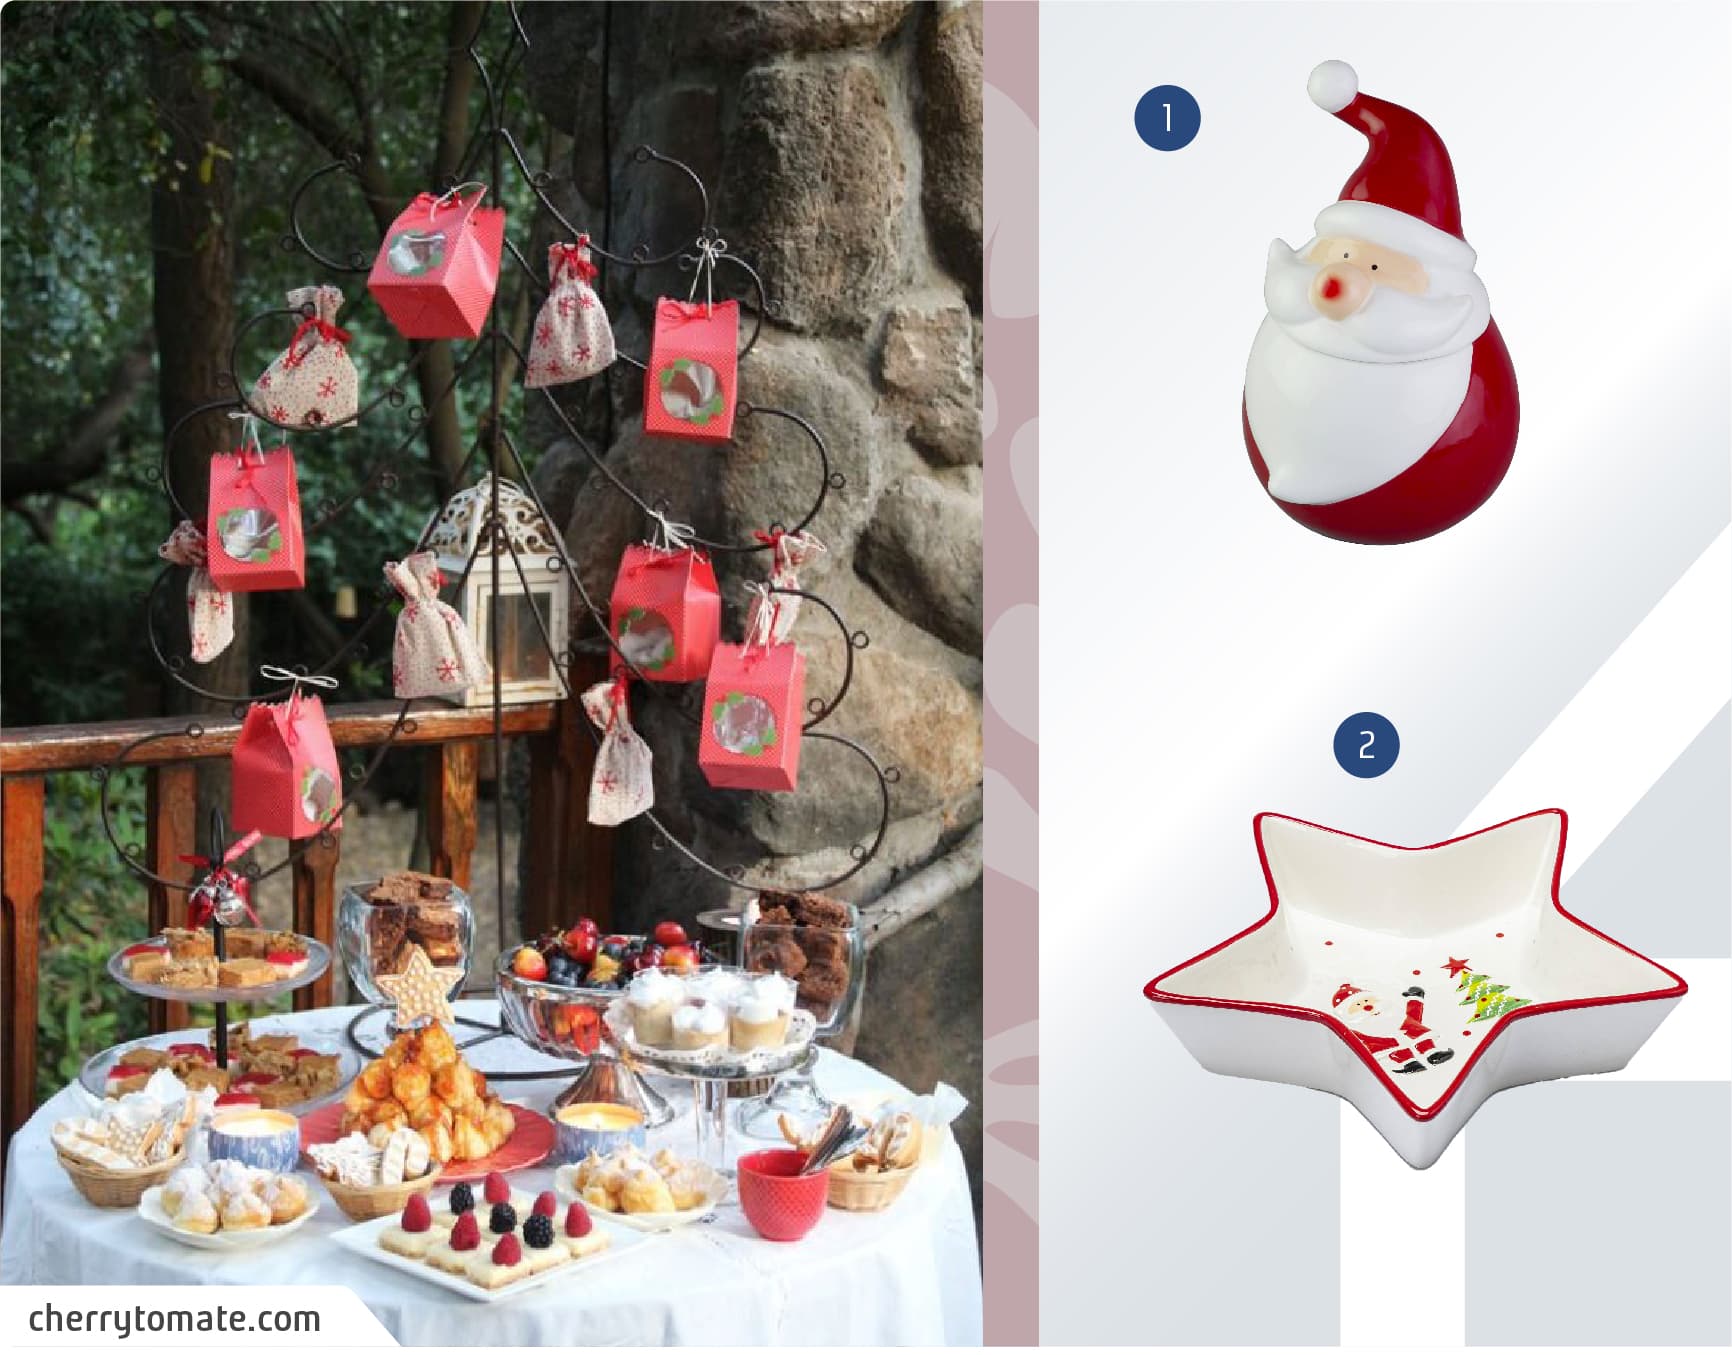 Mesa de postres dispuestos en una terraza, con decoraciones navideñas como estrellas y mini bolsas de regalo, junto a un moodboard de vajillas navideñas disponibles en Sodimac.